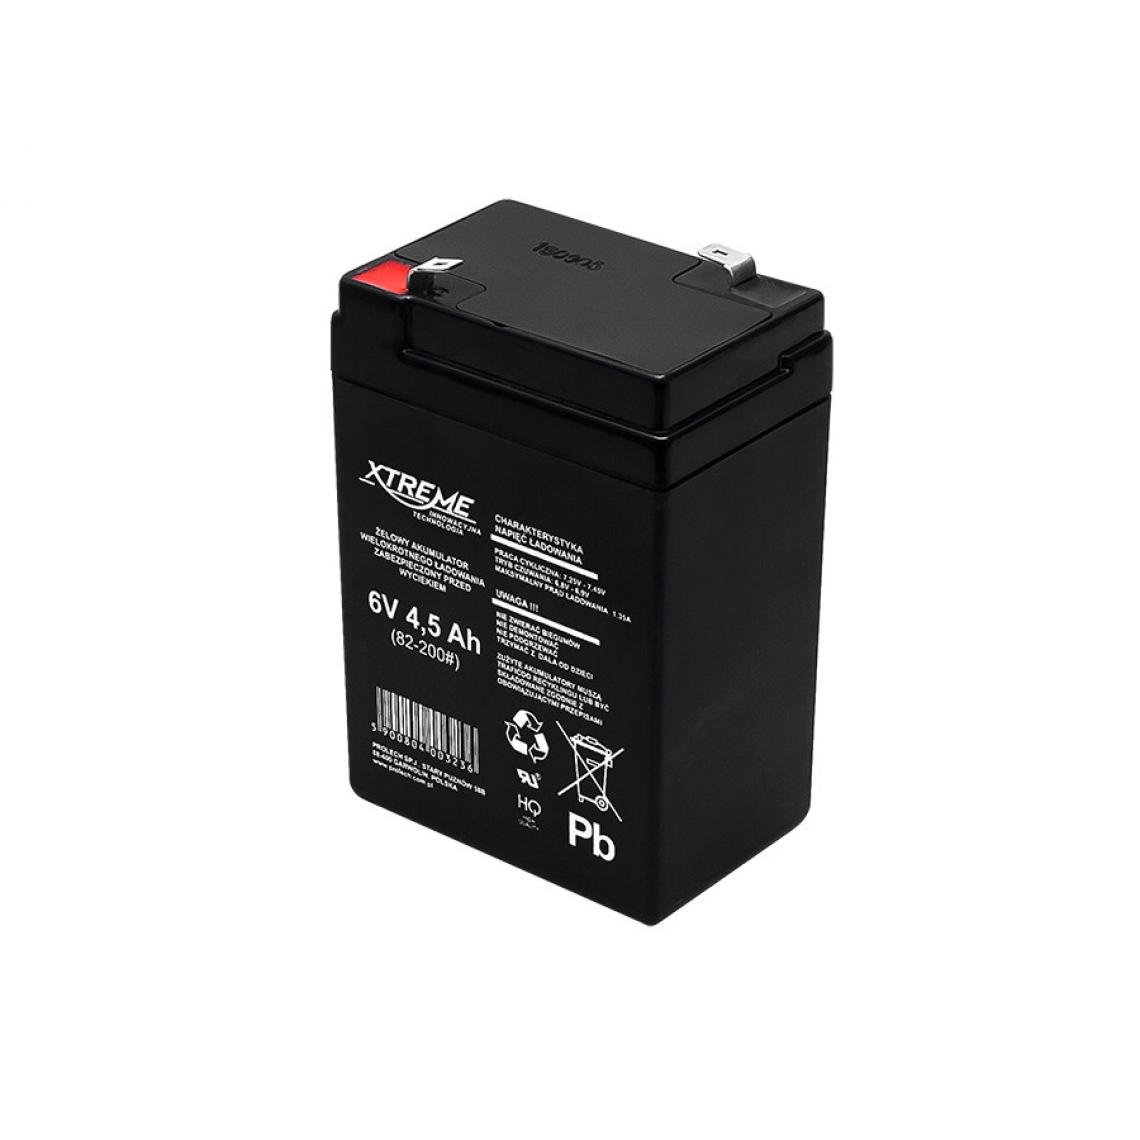 Xtreme - Batterie gel rechargeable 6V 4.5Ah sans entretien Xtreme - Accessoires alimentation